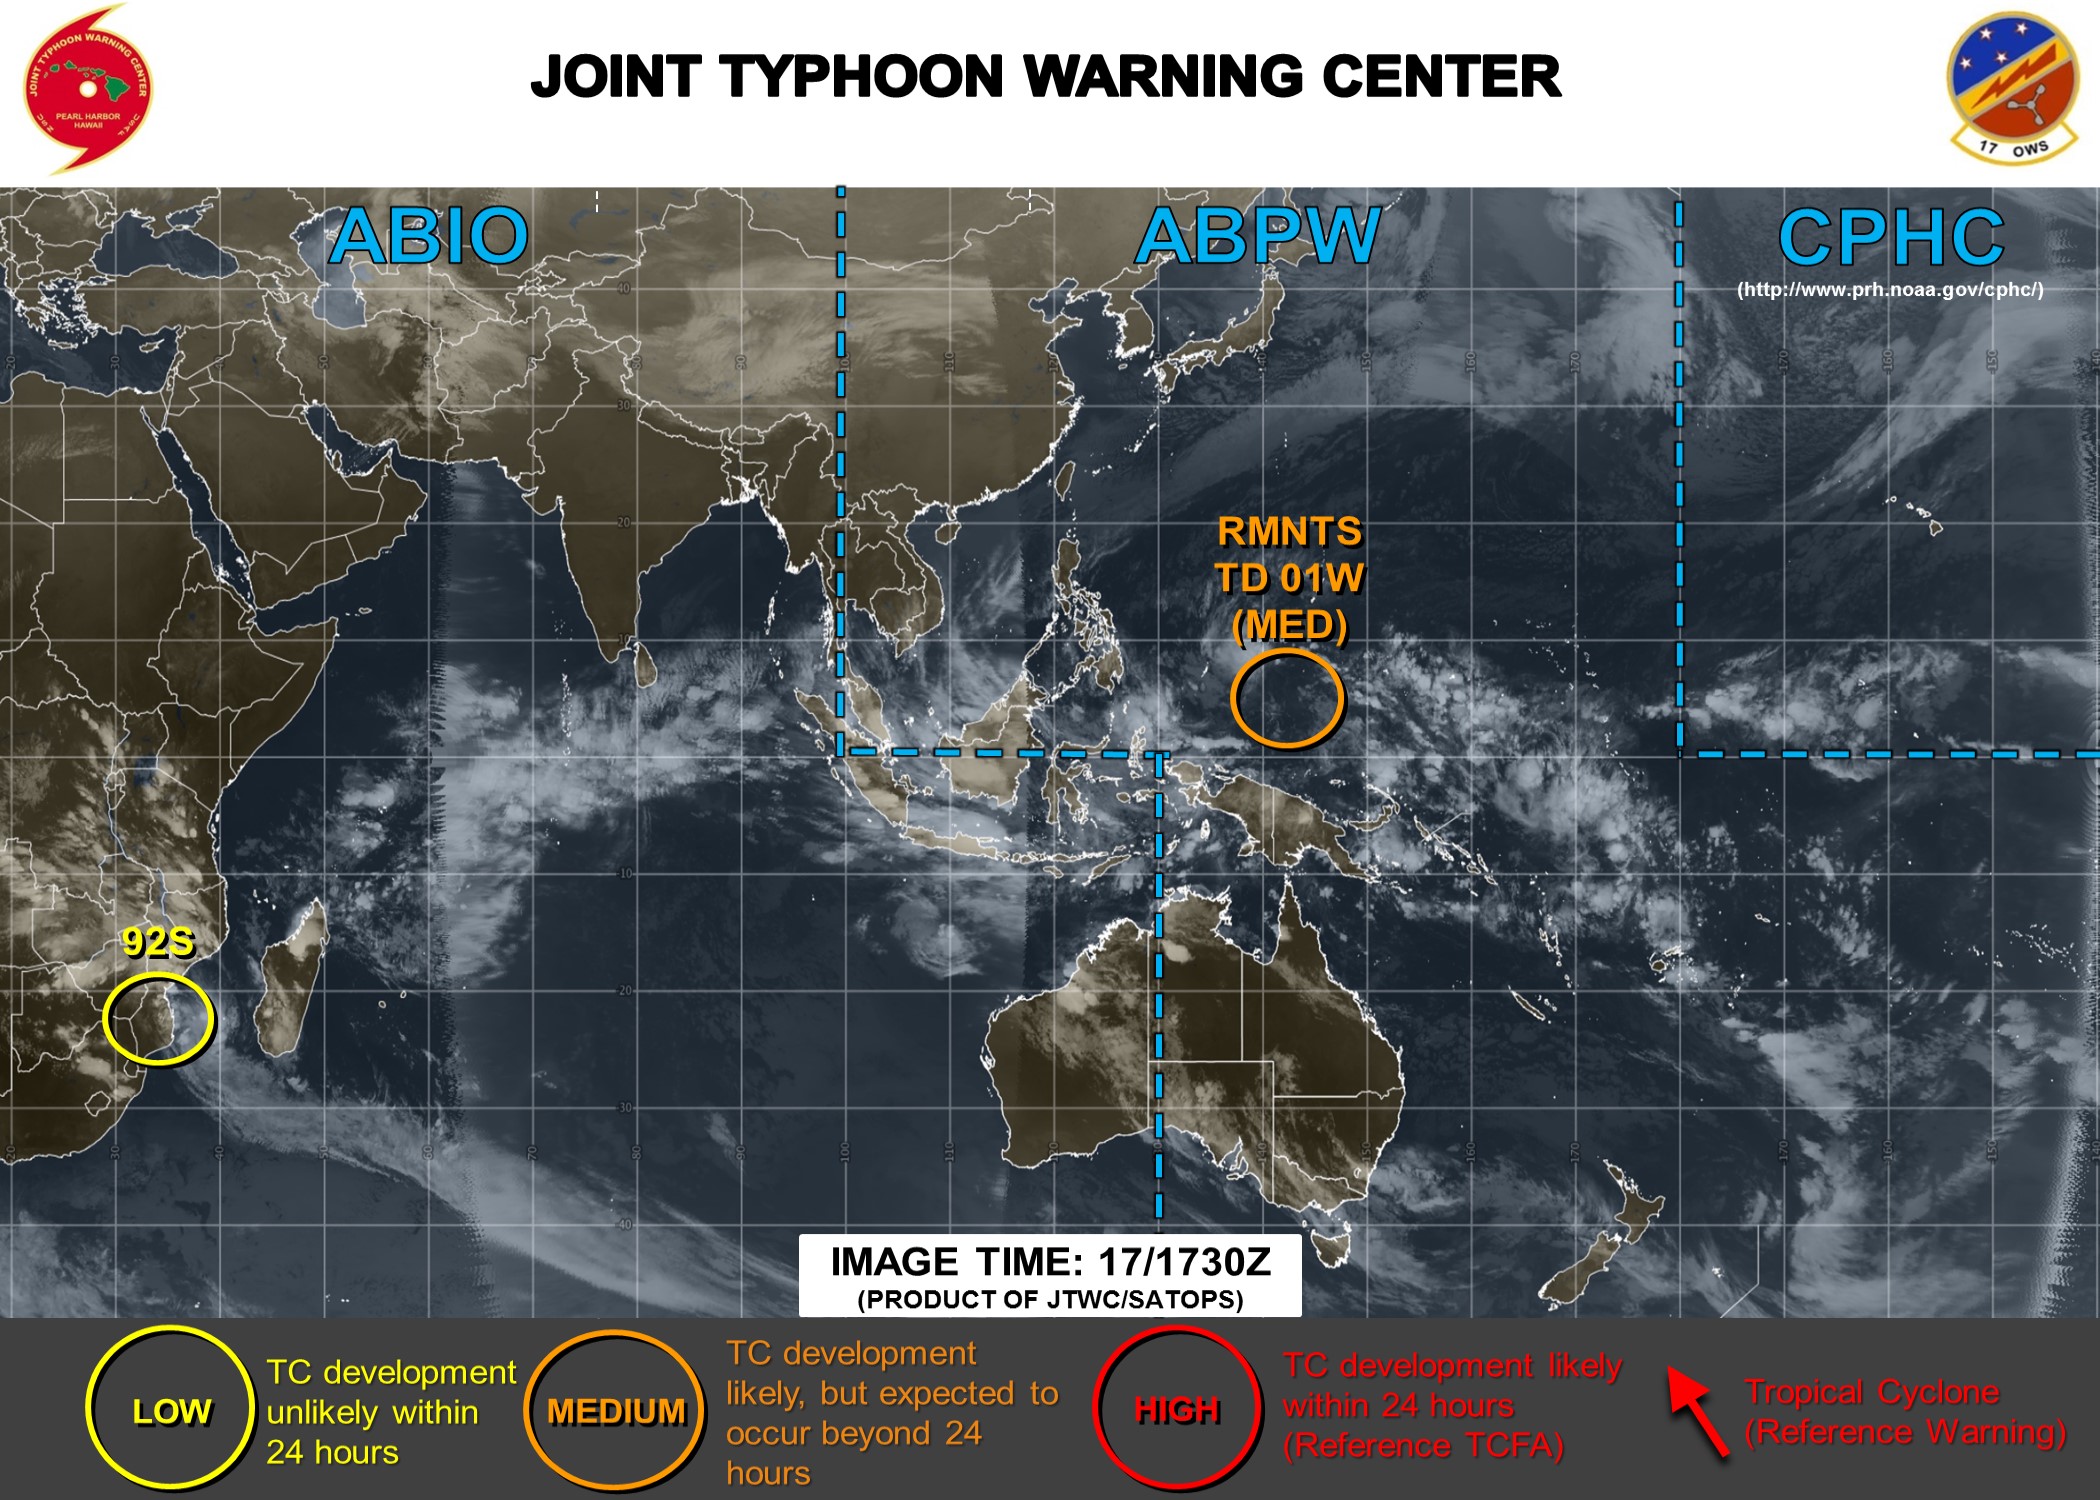 "Disette cyclonique": rare que les cartes du Joint Typhoon Warning Center soient aussi peu fournies surtout en plein mois de Janvier.